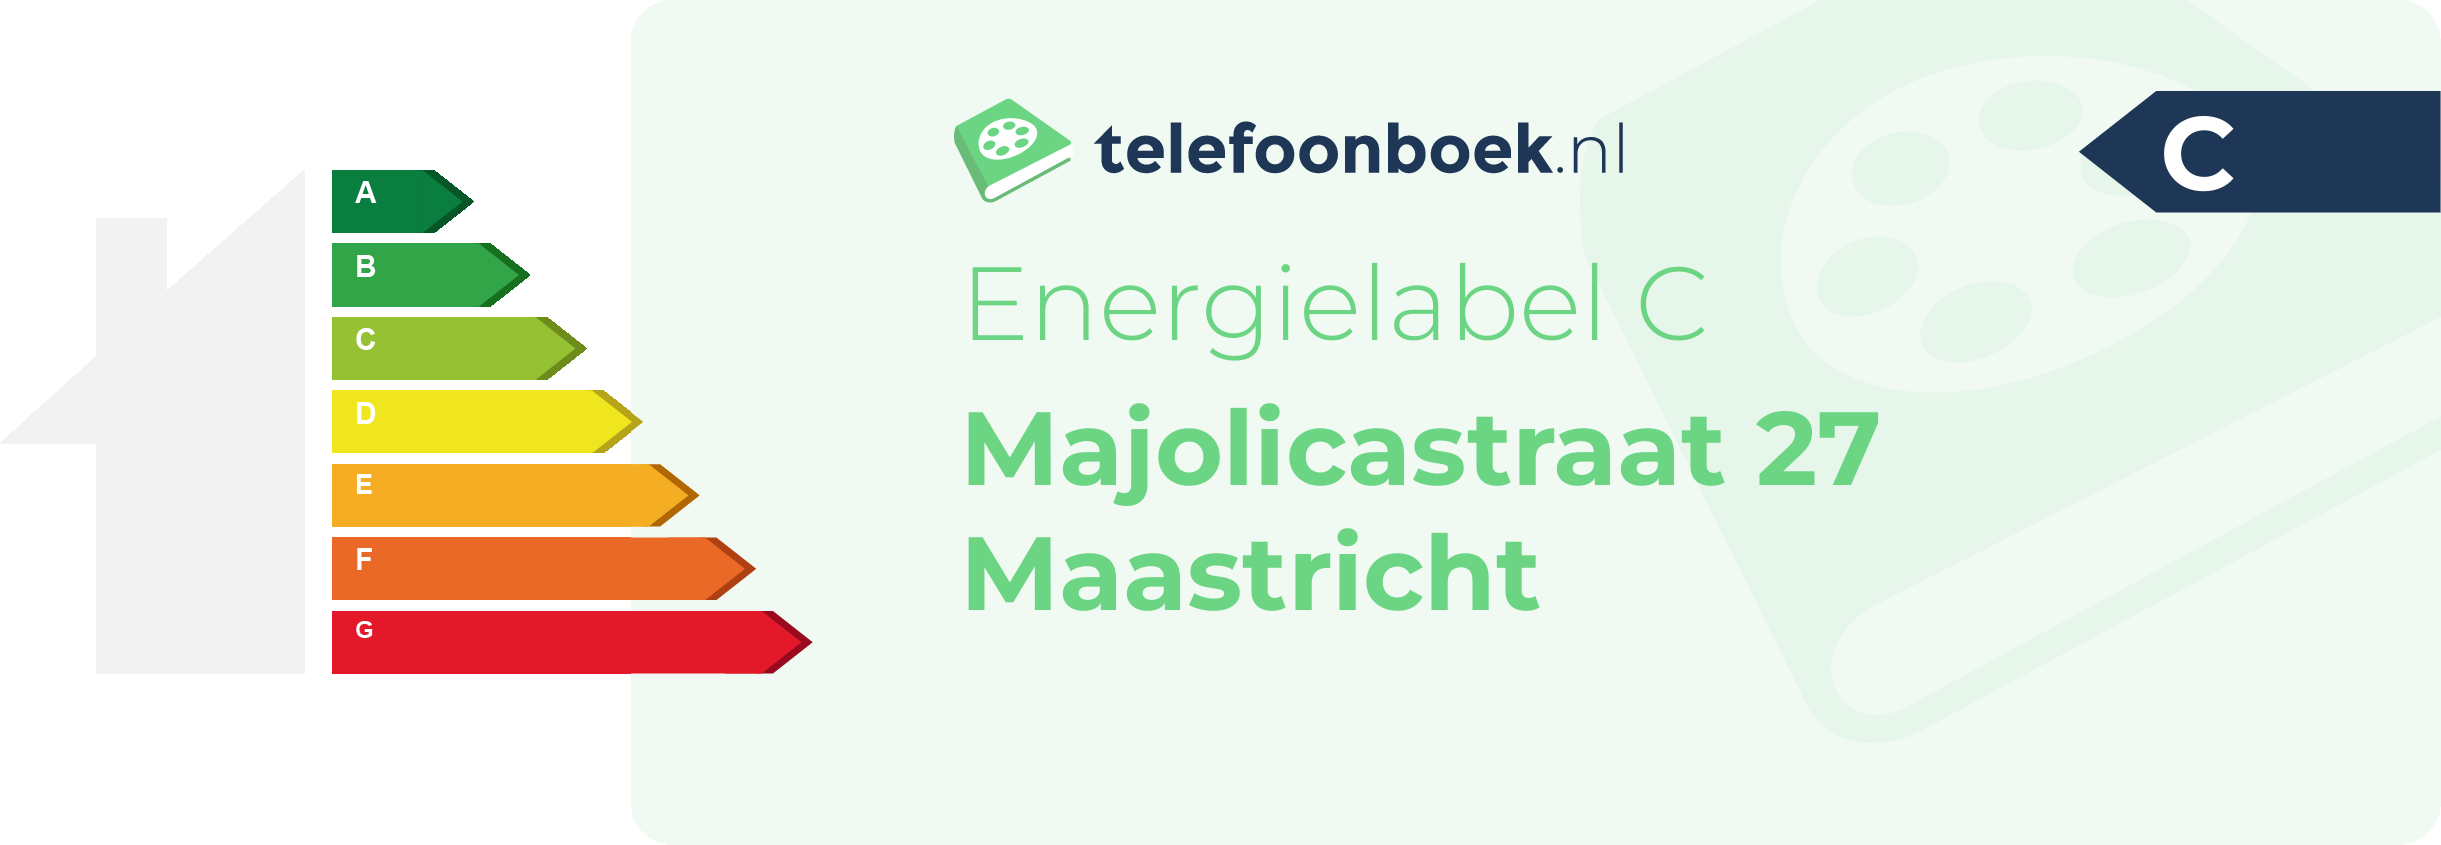 Energielabel Majolicastraat 27 Maastricht